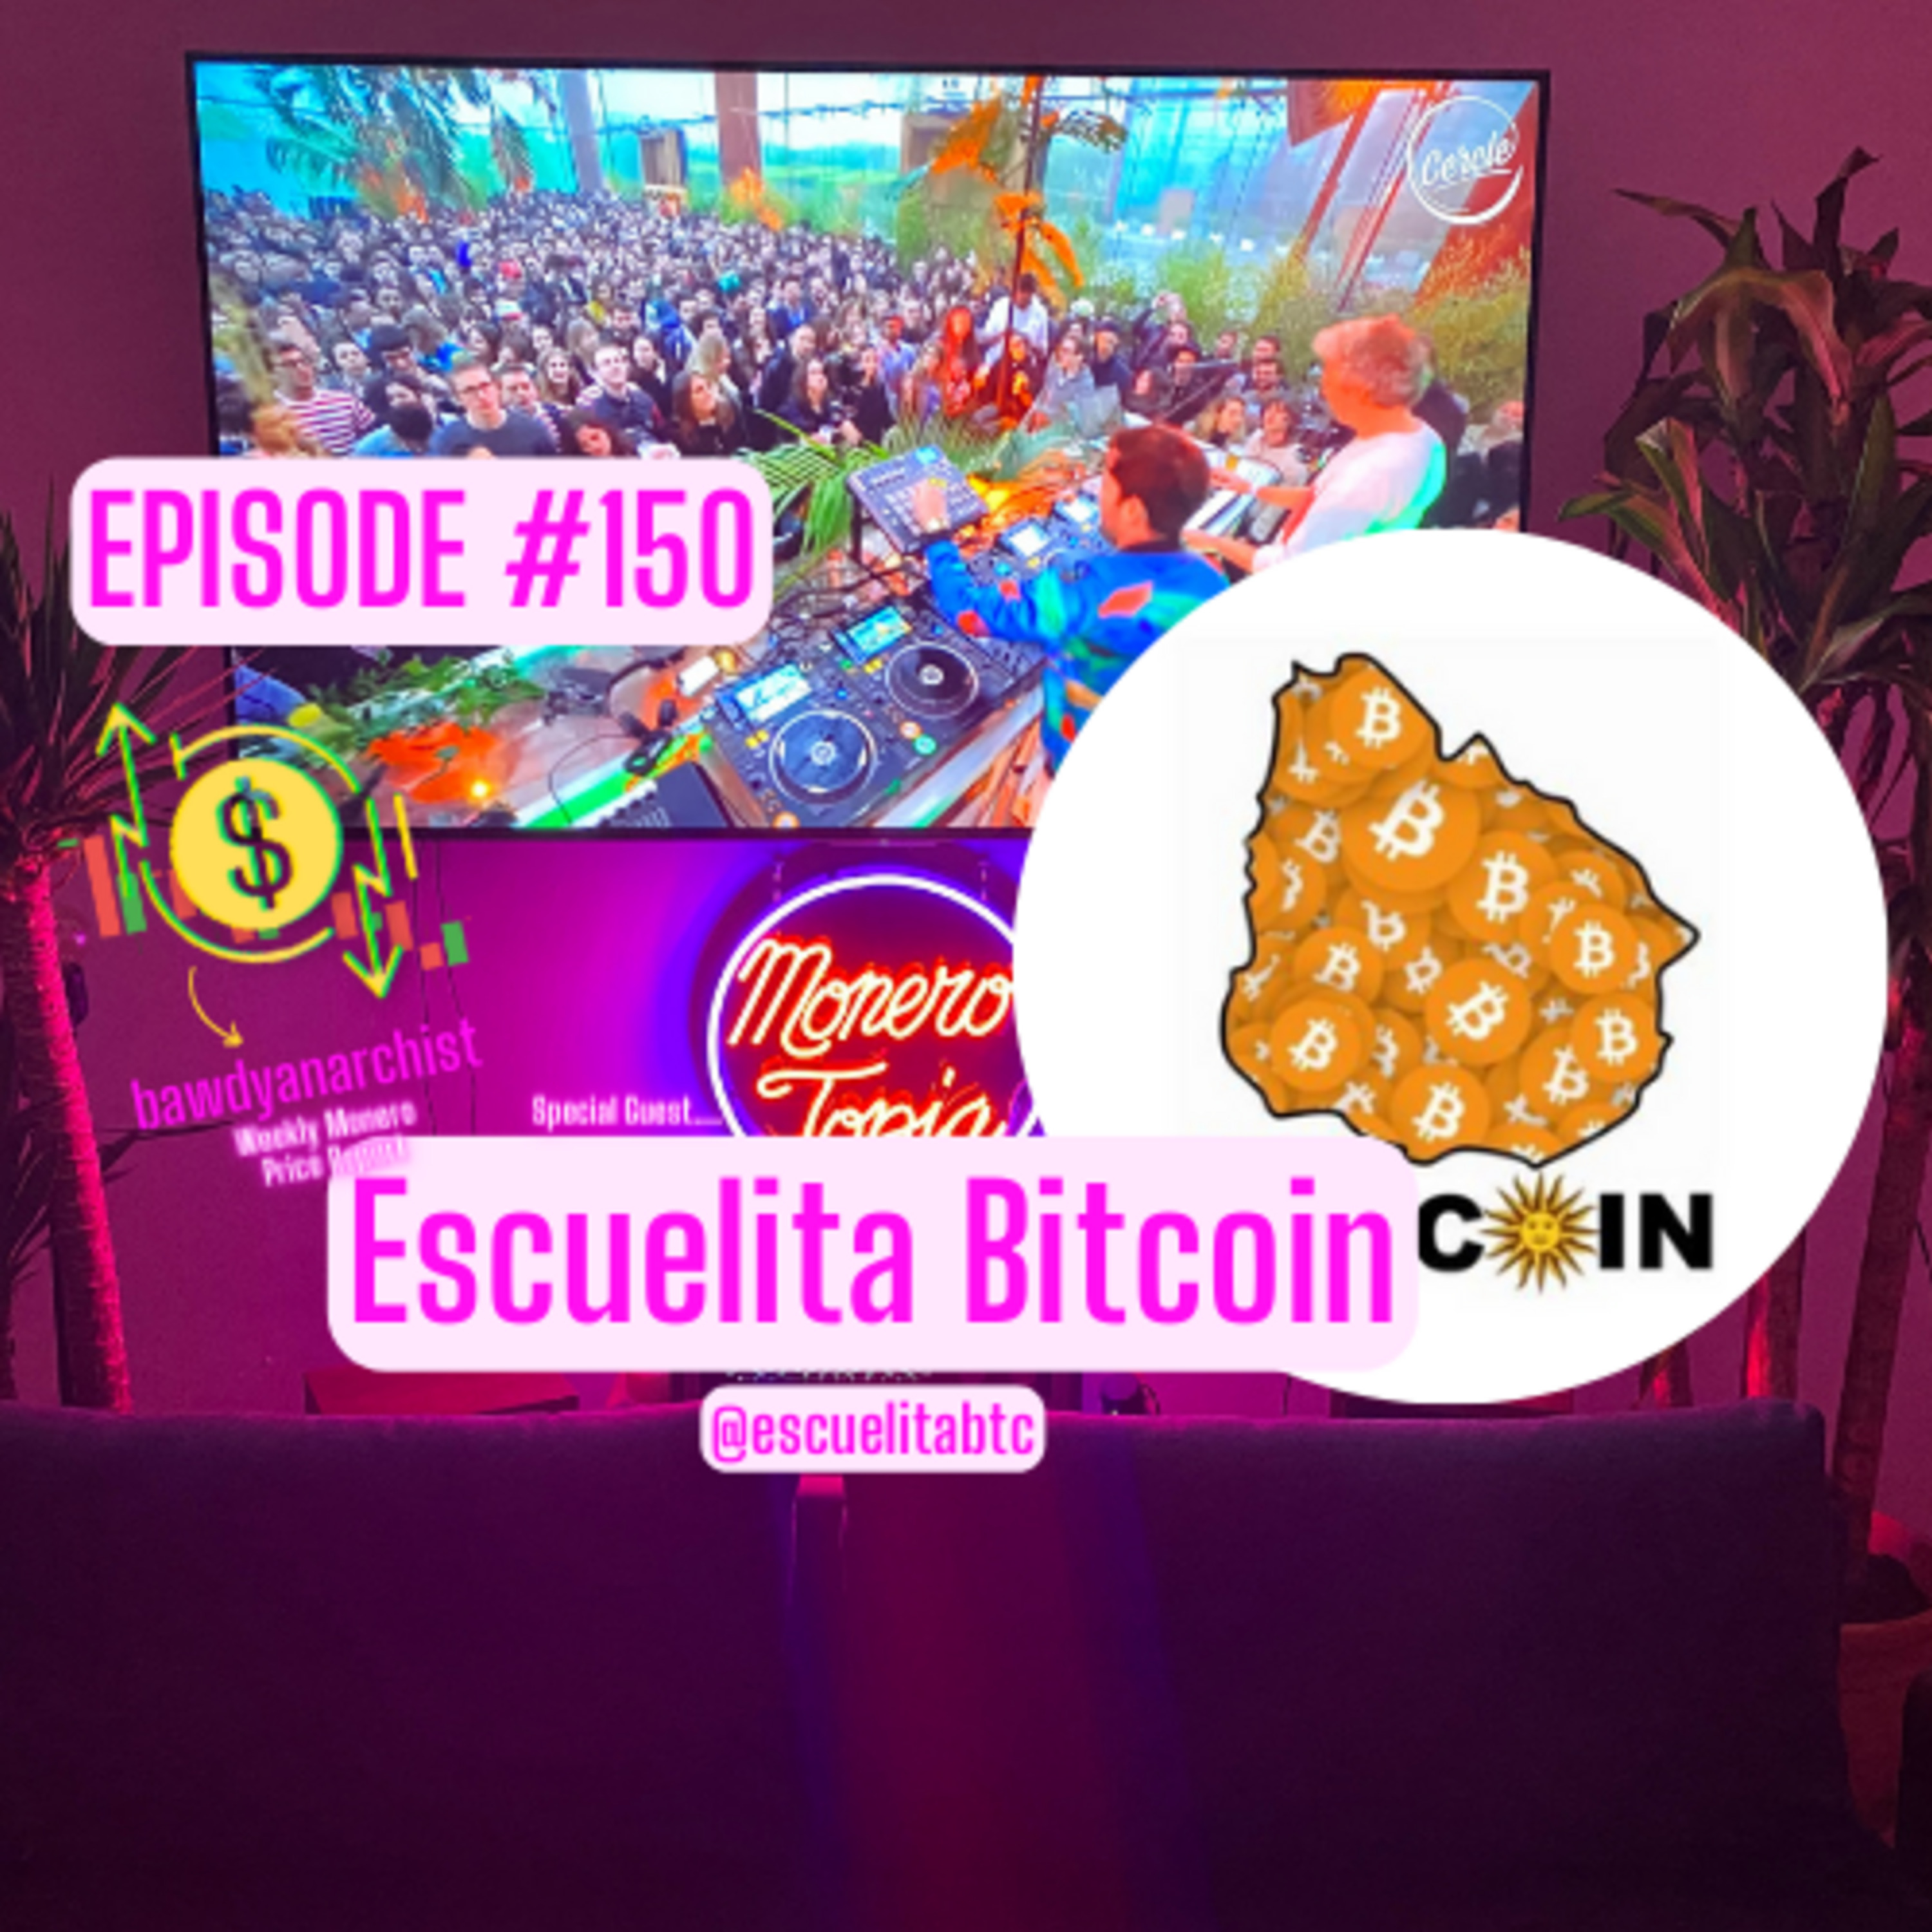 Monero Town Update w/ Escuelita Bitcoin, Monero Price, News & MORE! | EPI #150